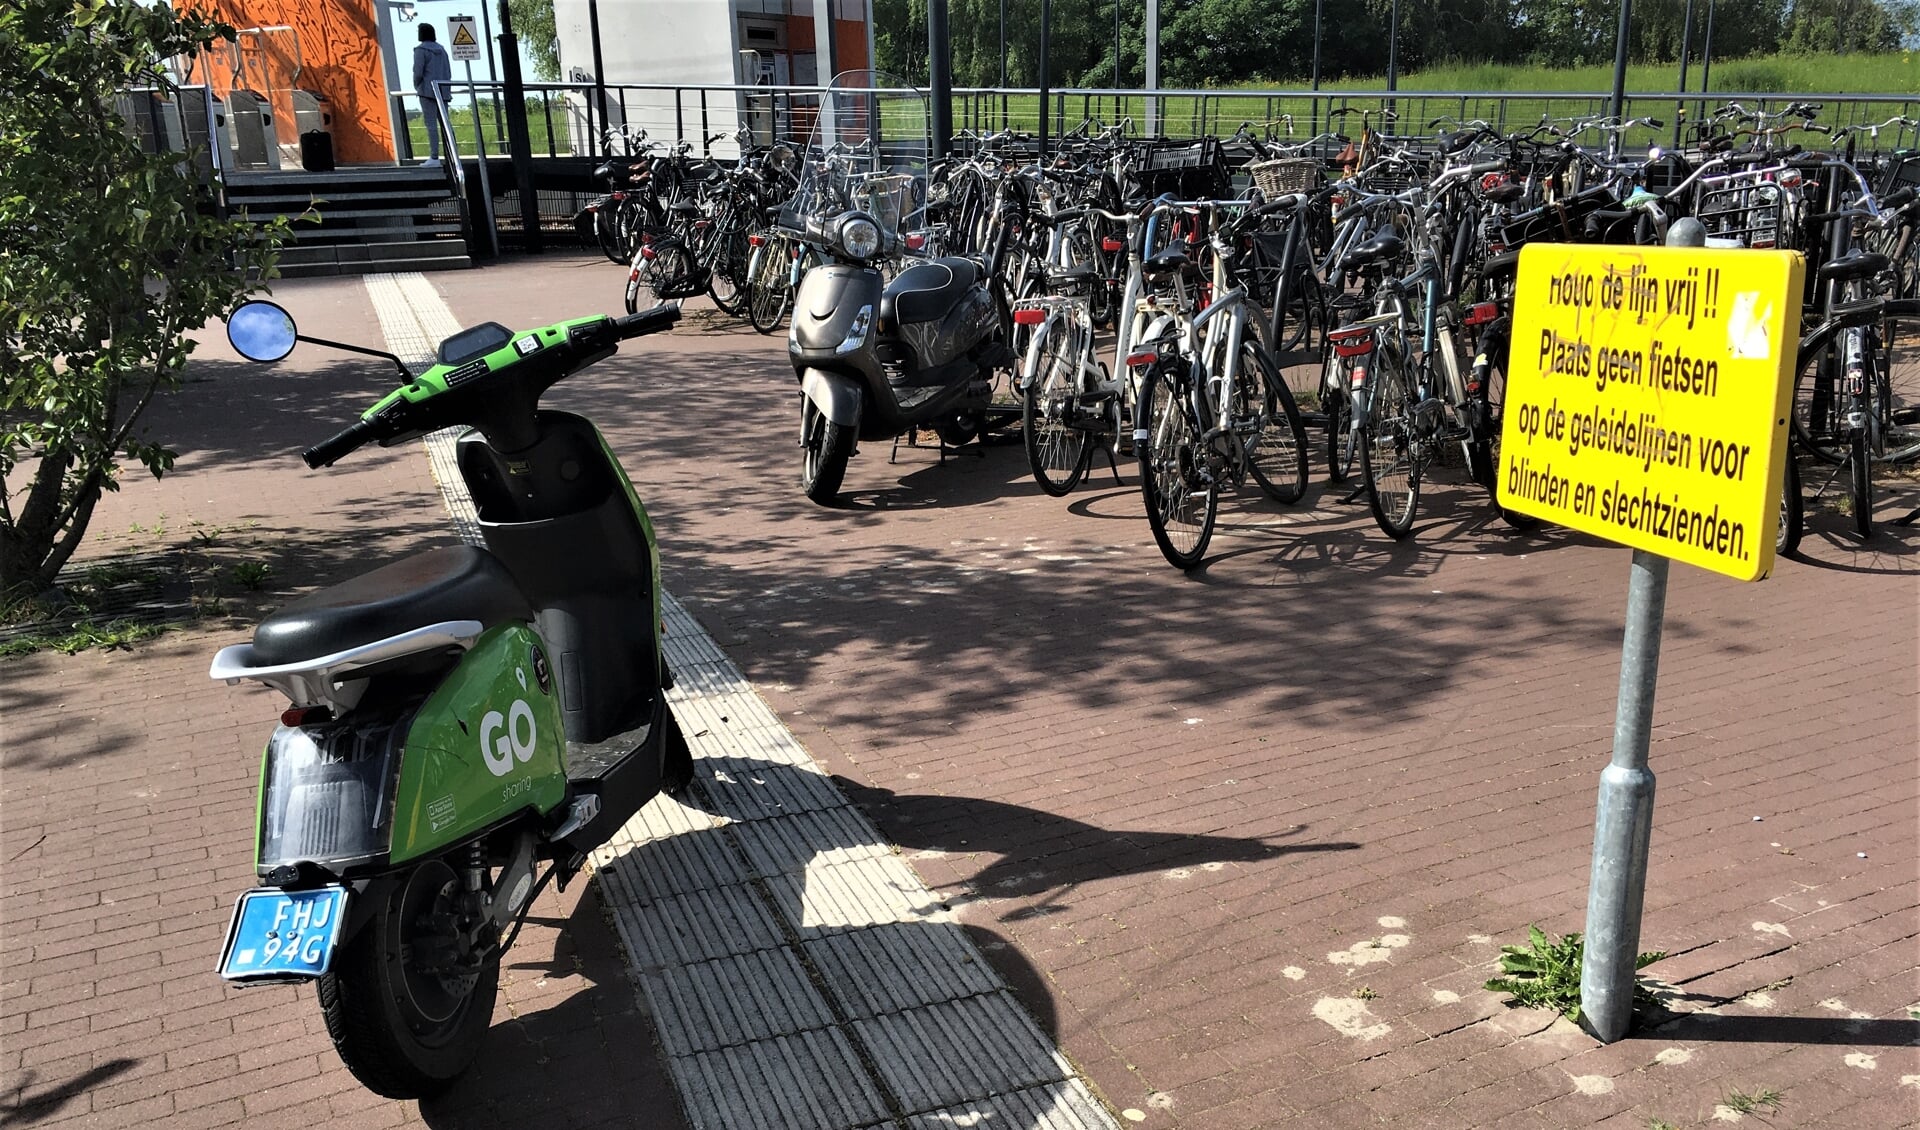 De deelscooters van GO Sharing worden nog regelmatig op de voor blinde en slechtziende mensen bestemde geleidelijnen geplaatst. Zoals hier bij metrostation Steendijkpolder.